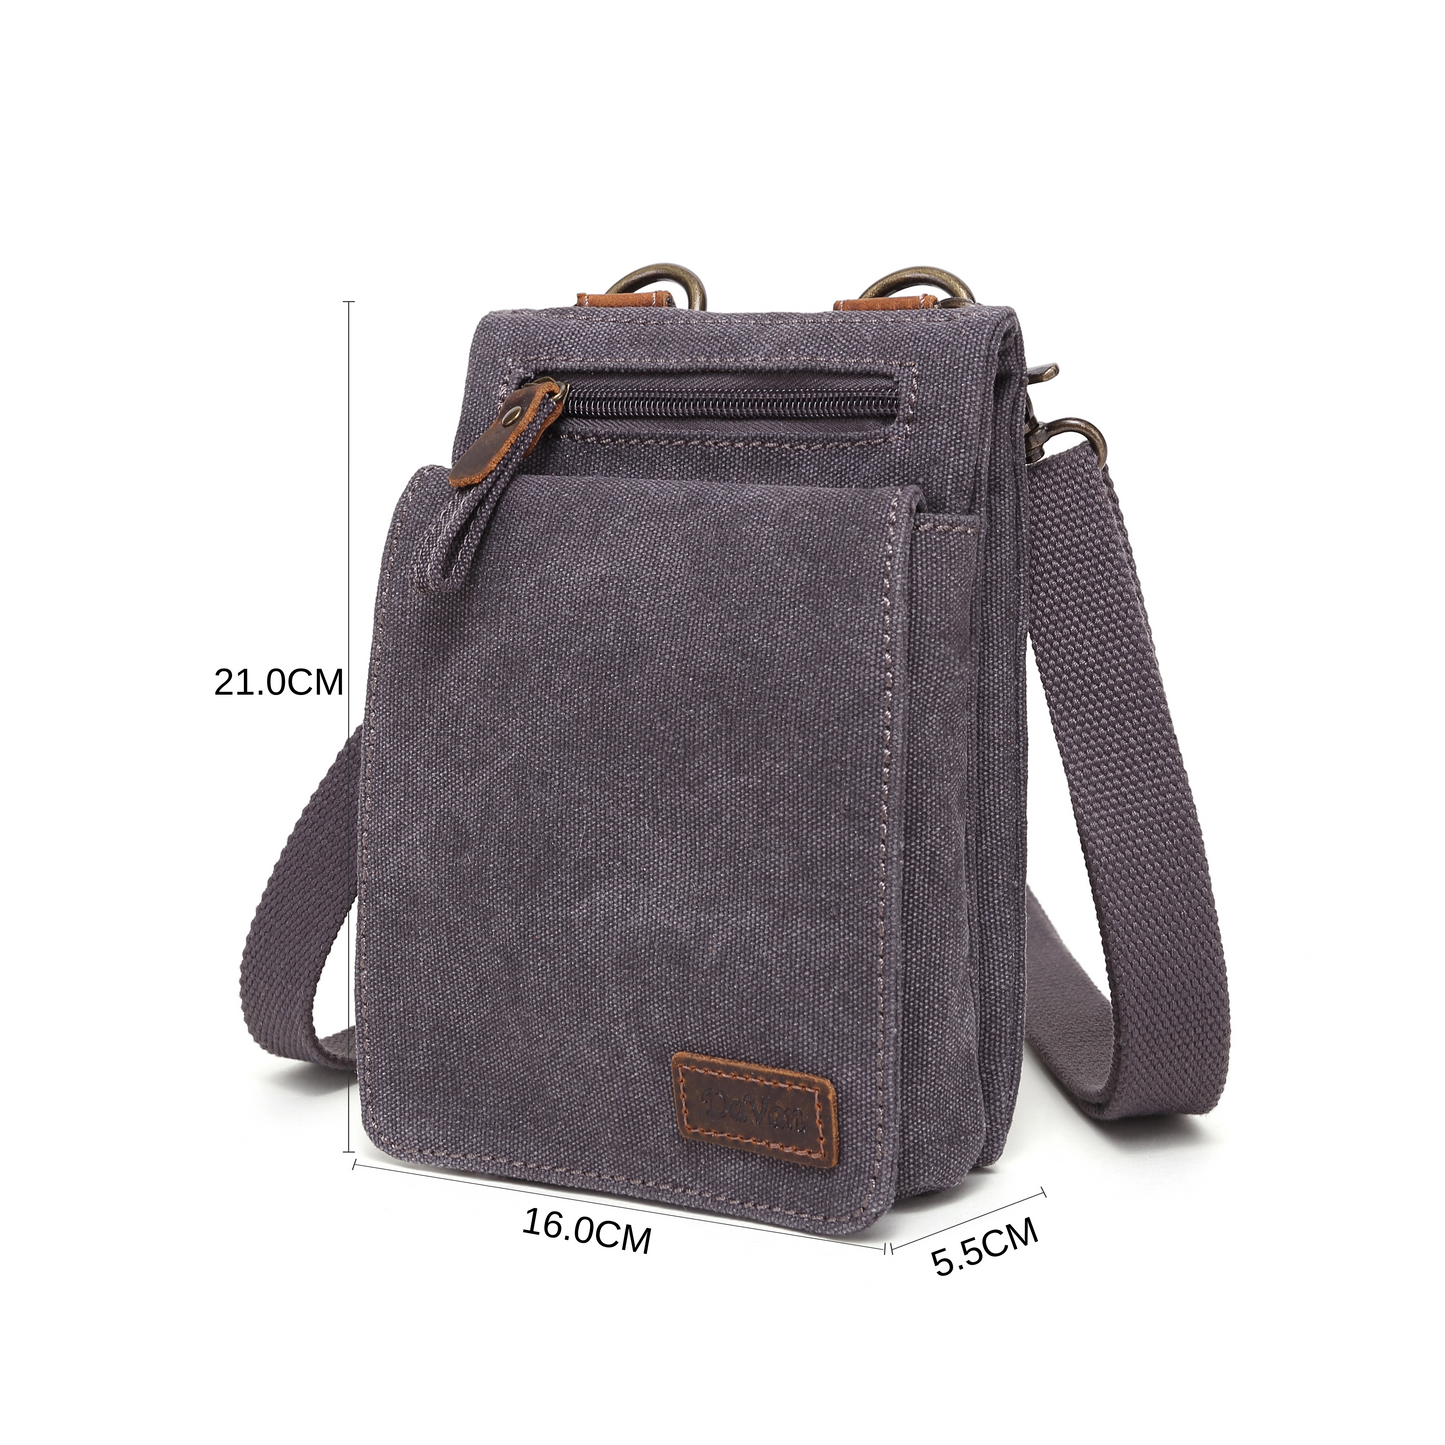 A Davan Canvas Shoulder Bag with Leather Stripe Card Locker and an adjustable shoulder strap.